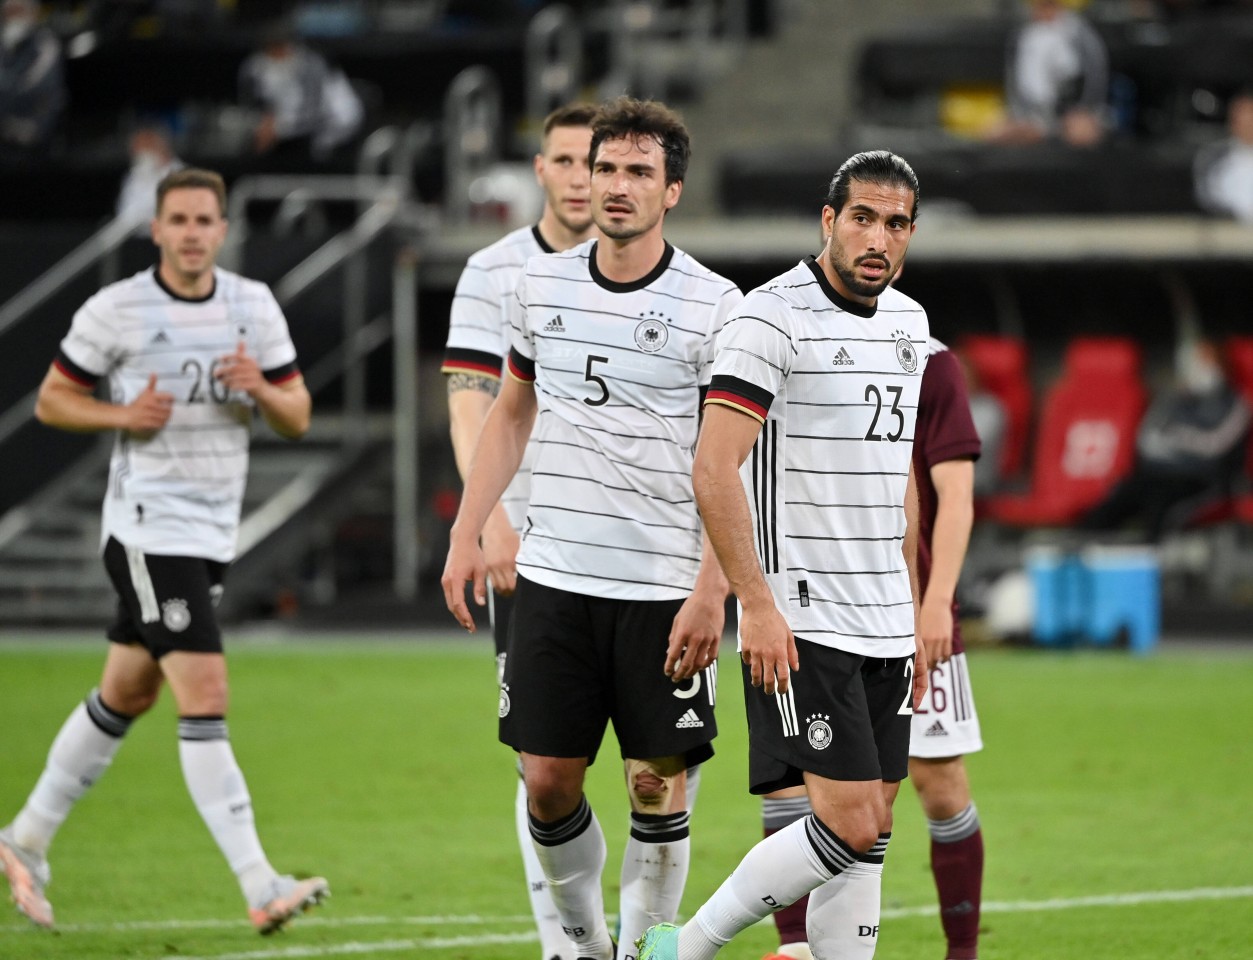 Die BVB-Stars Mats Hummels und Emre Can spielen derzeit für den DFB bei der EM 2021.